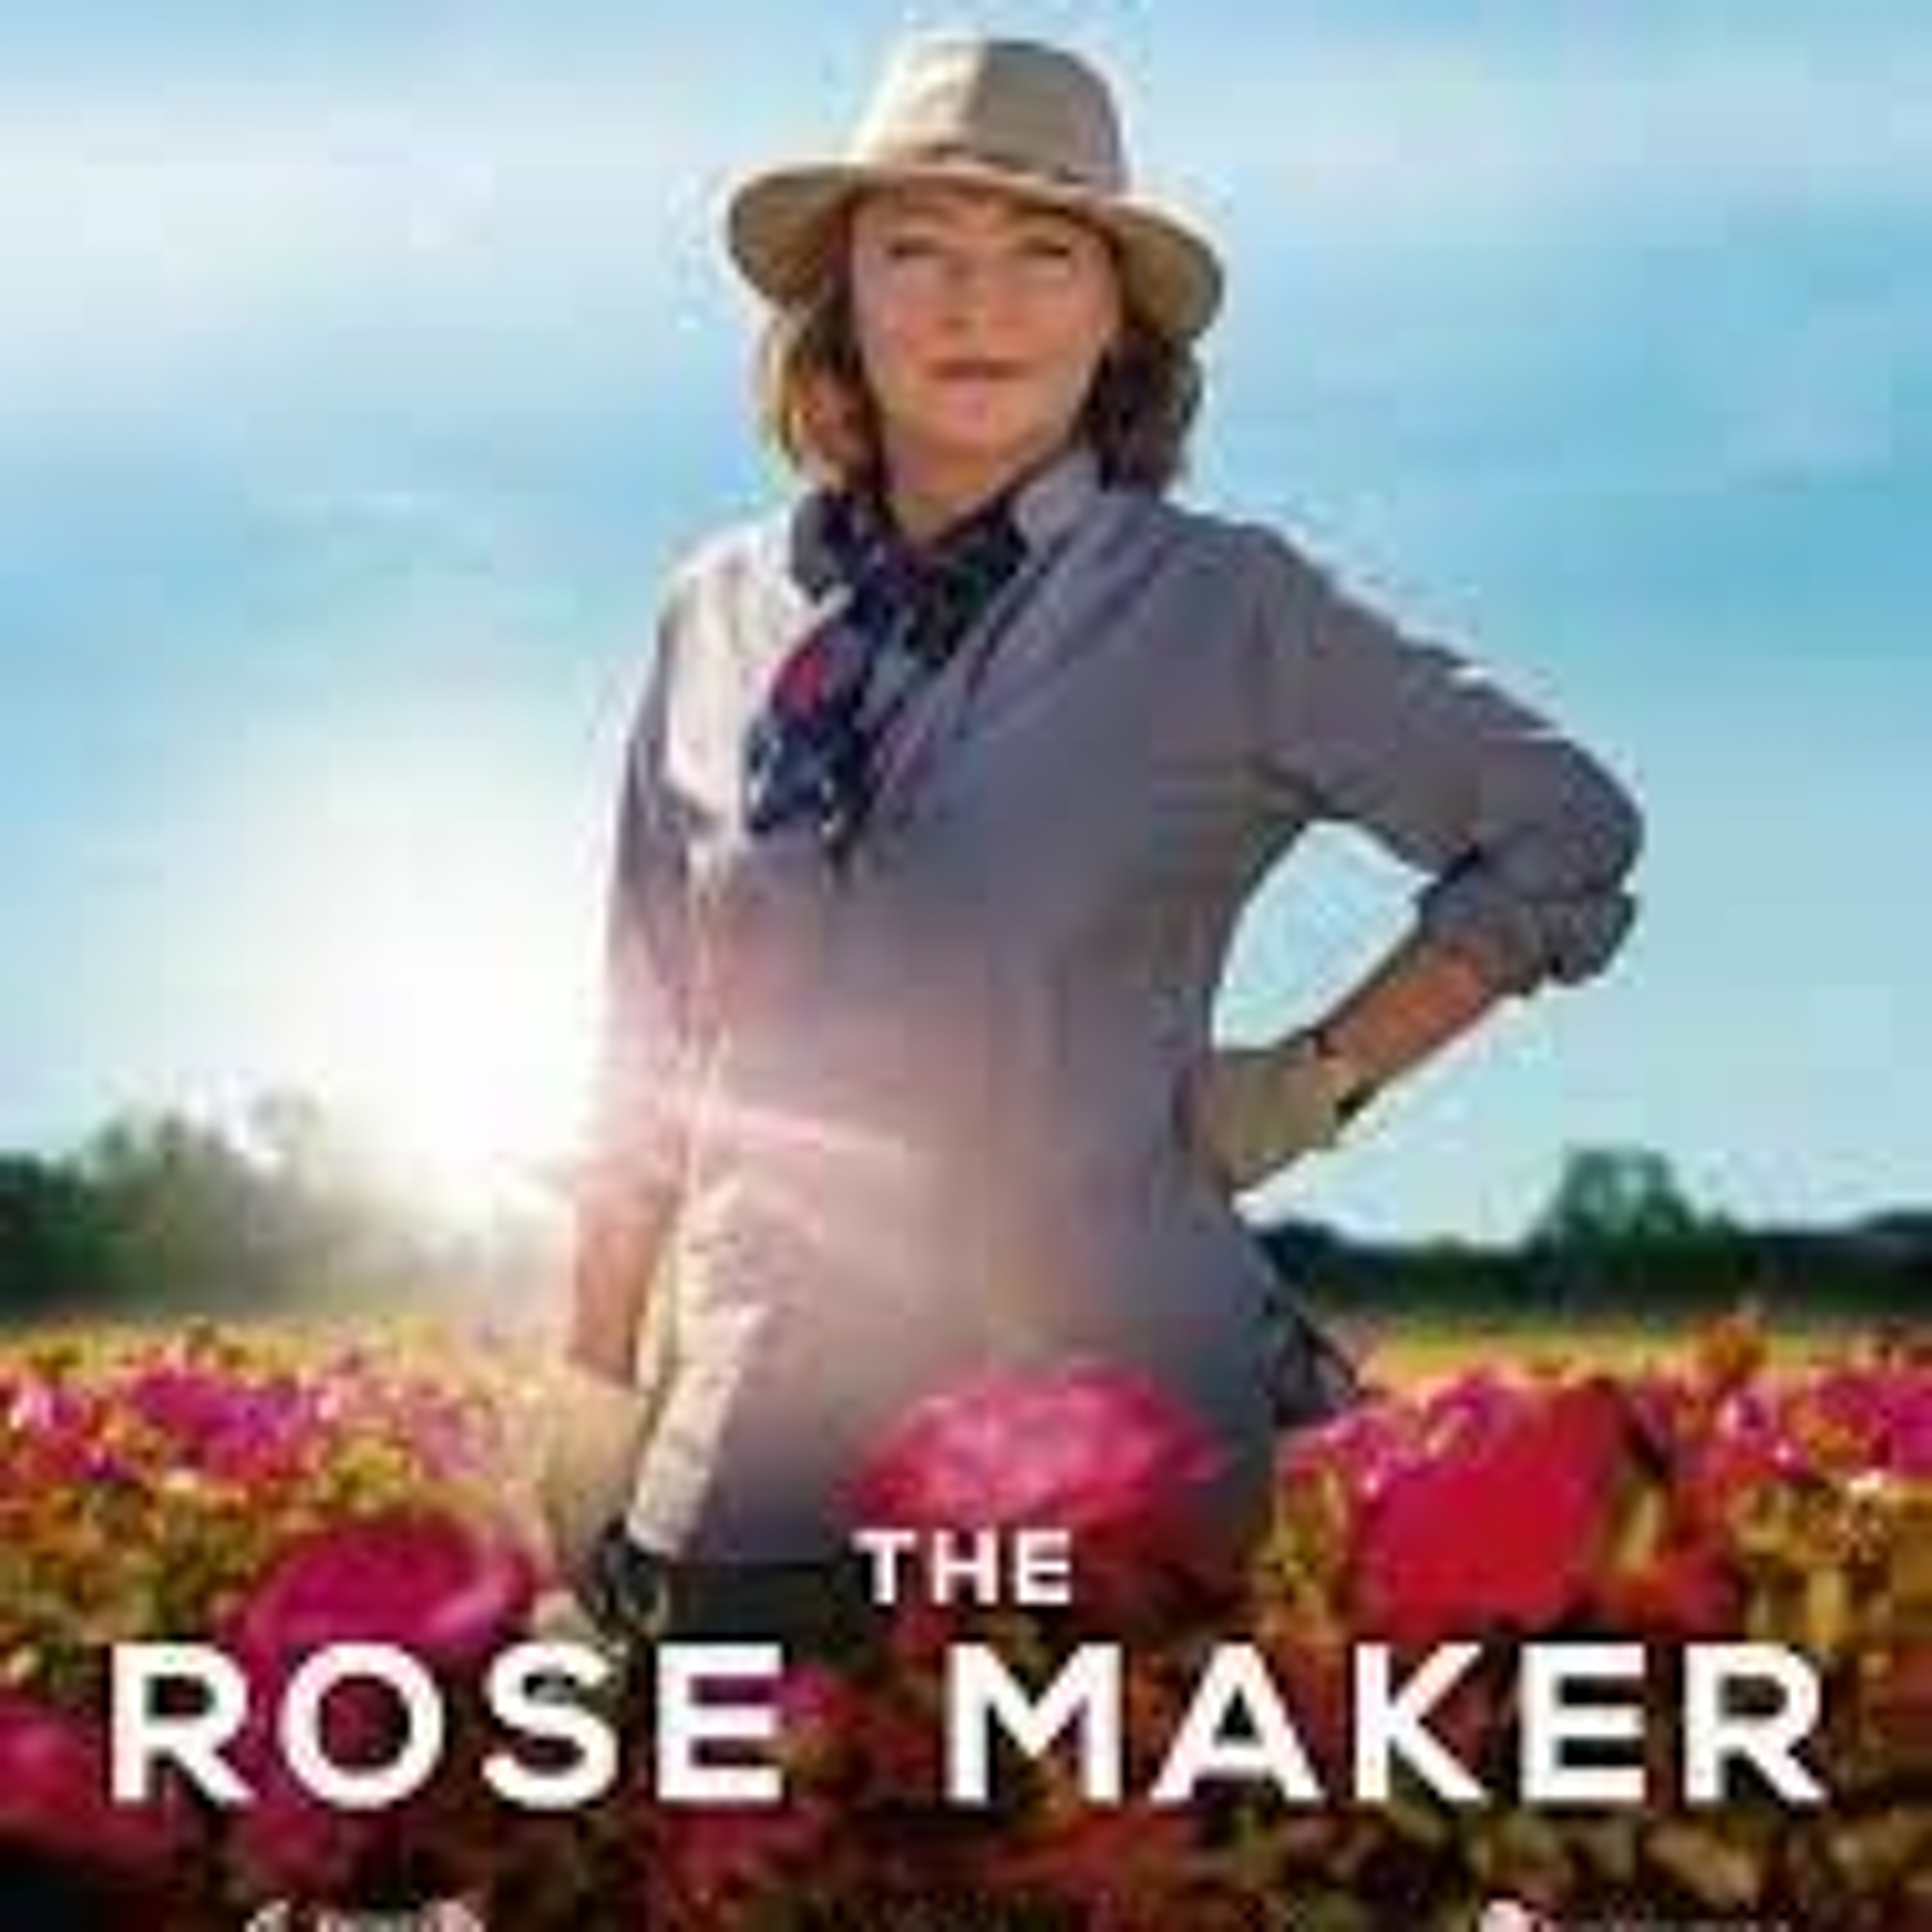 Episode 39 - The Rose Maker